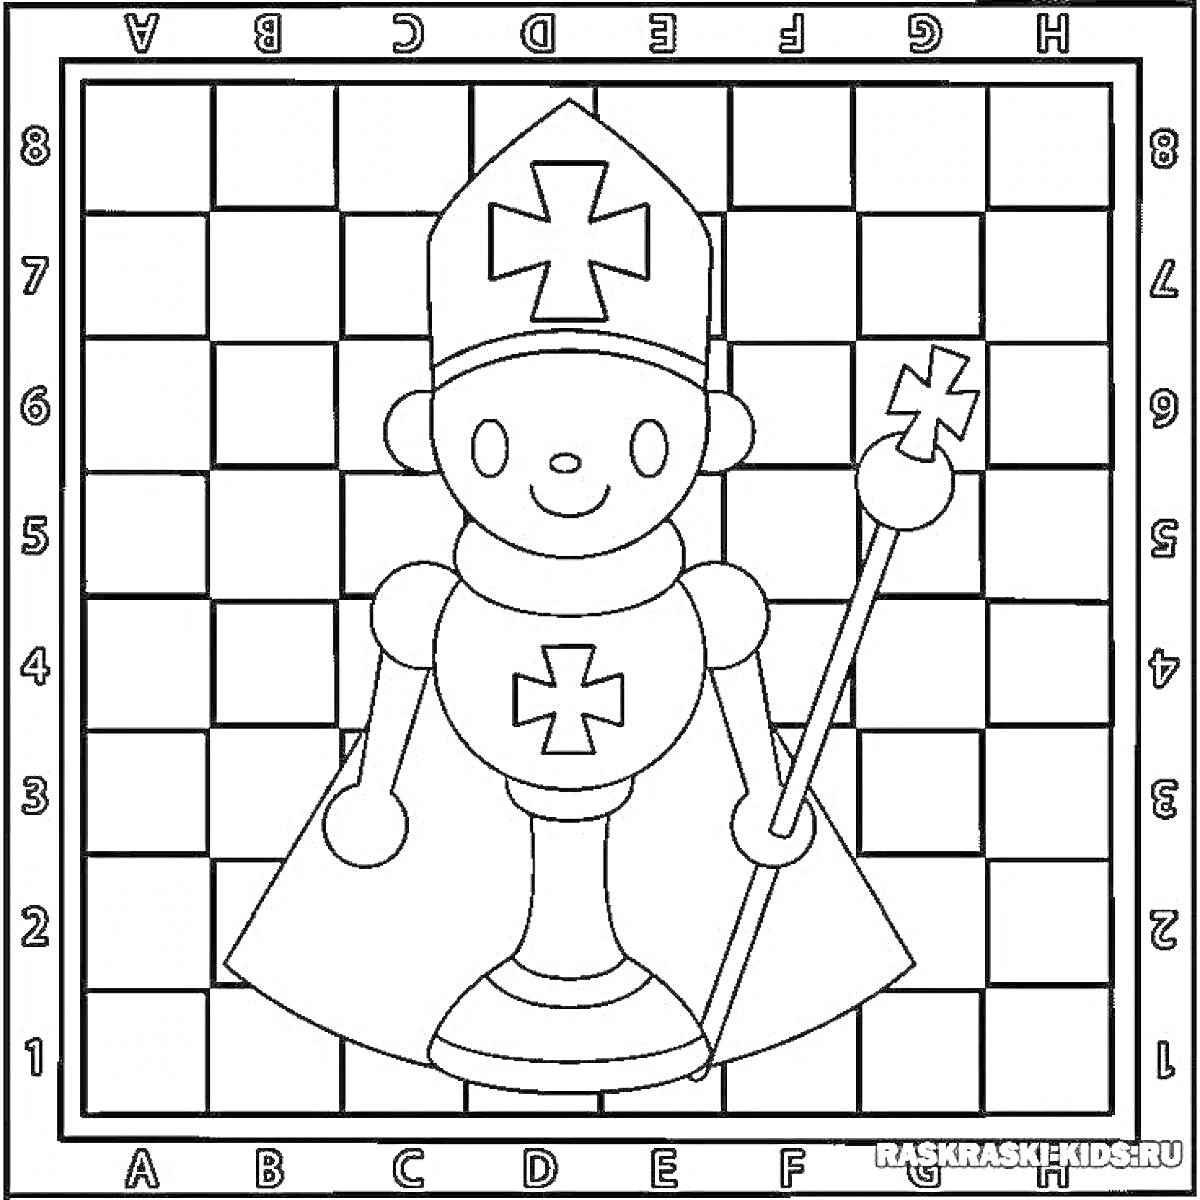 Раскраска Шахматный слон на шахматной доске с латинскими буквами и цифрами и крестом на шляпе и груди